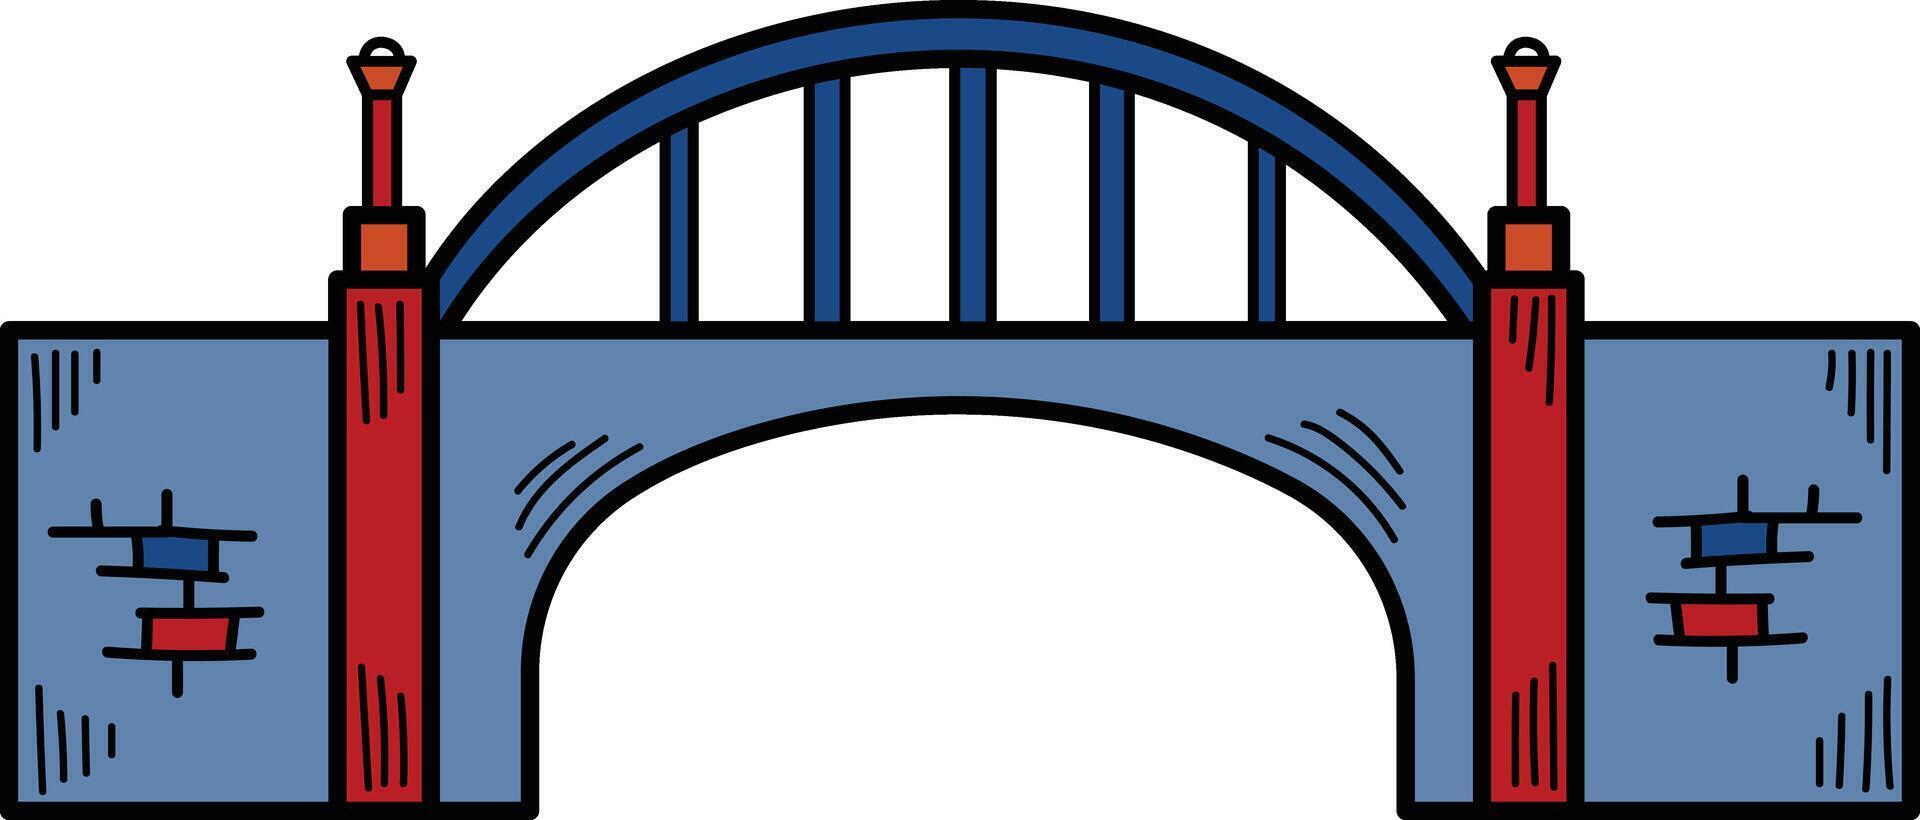 en bro är visad i svart och vit vektor